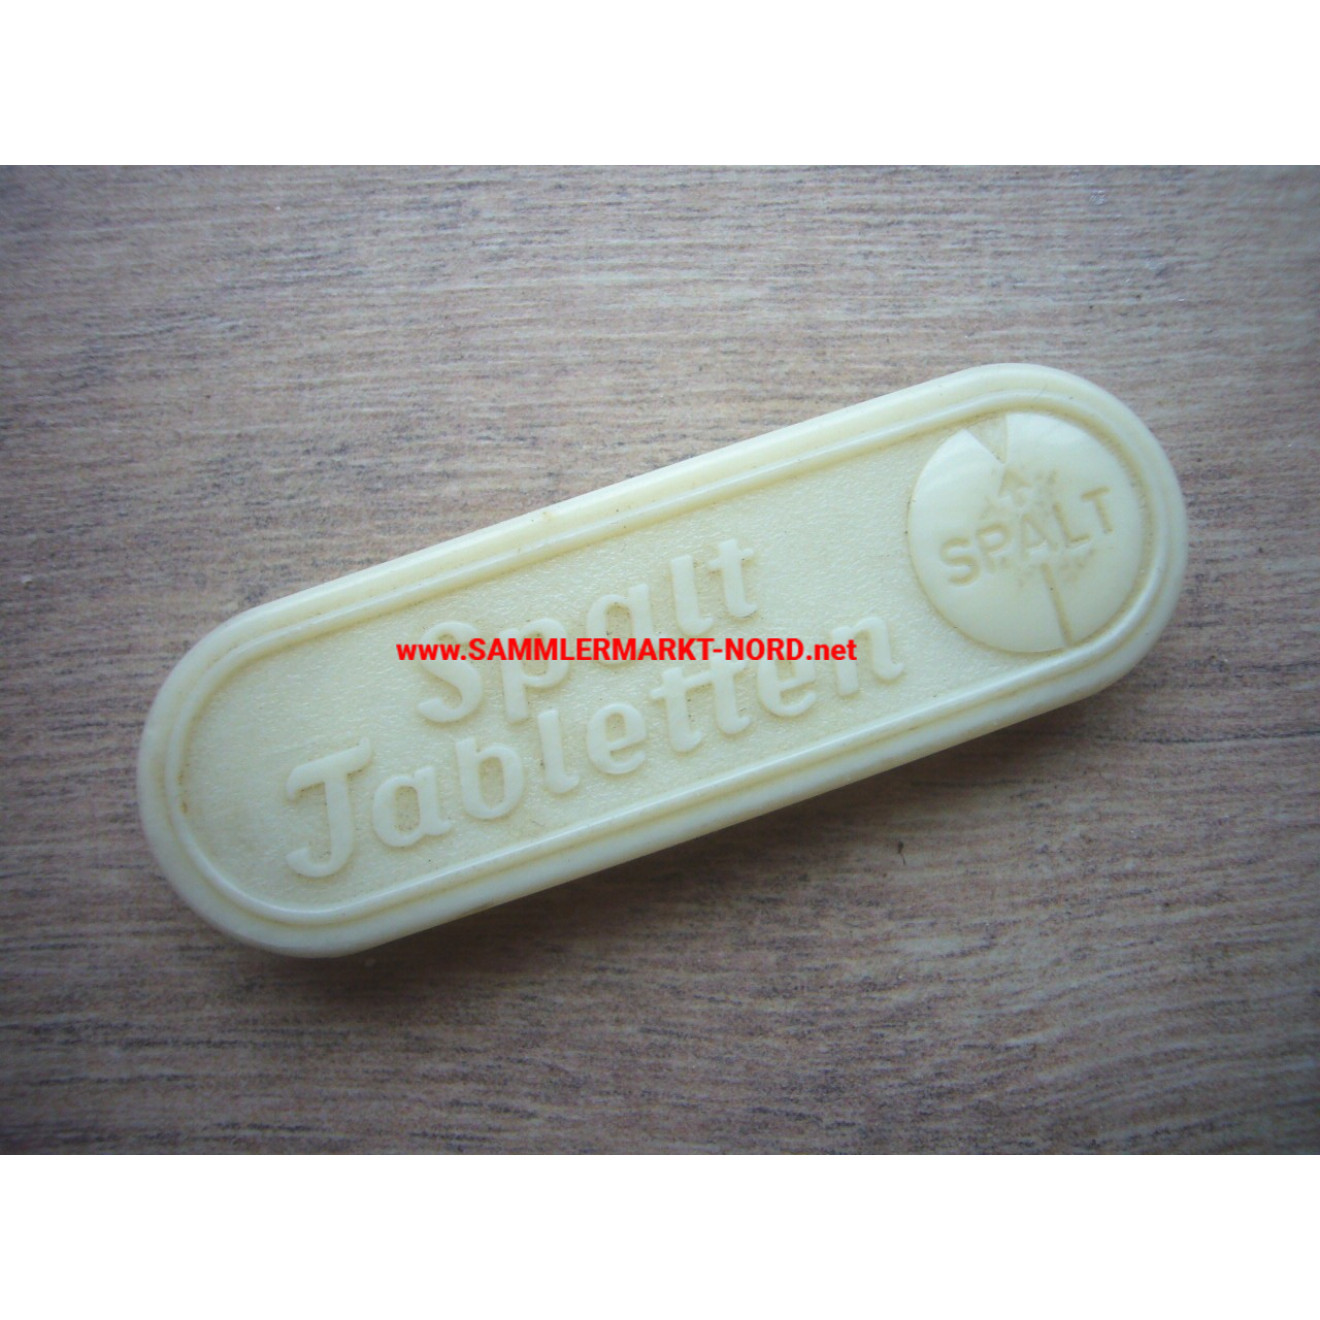 Wehrmacht - Marketender - Spalt Tablettendose